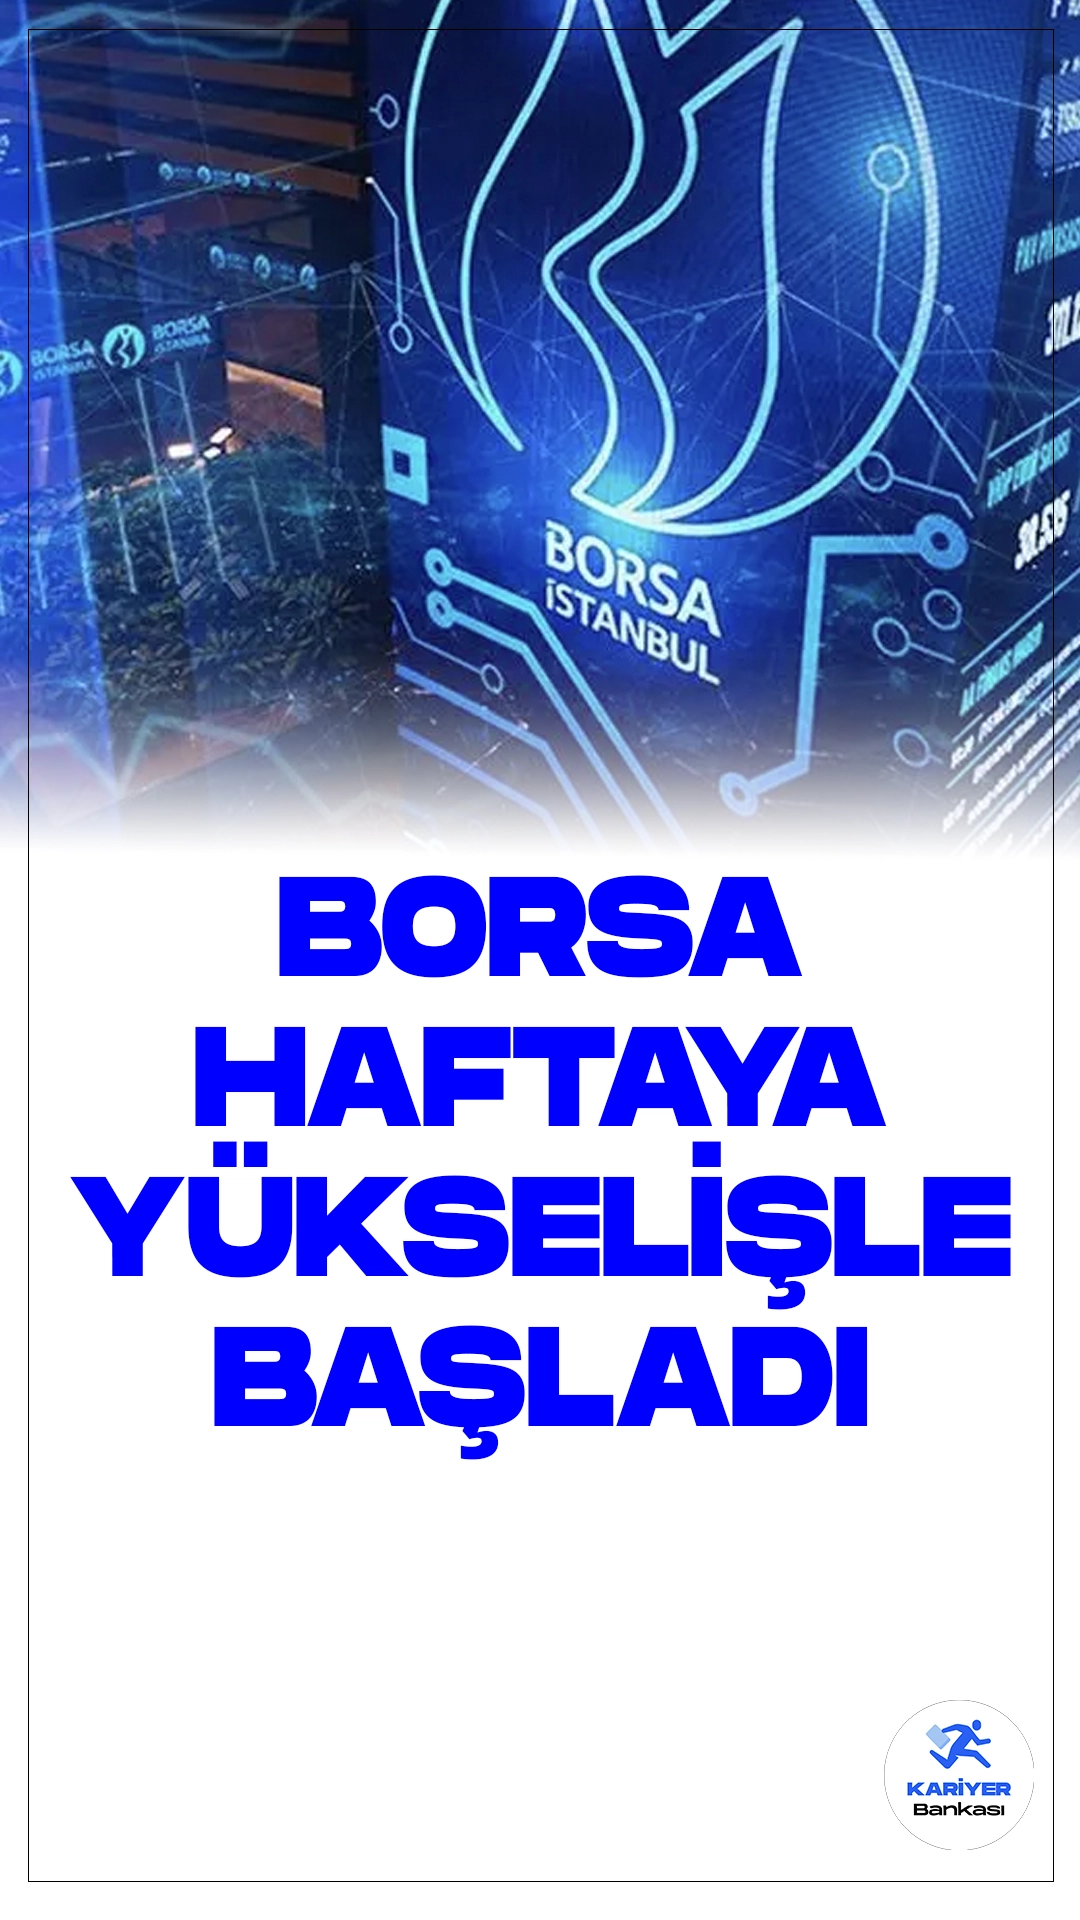 Borsa Haftaya Yükselişle Başladı: BIST 100 Endeksi %1,01 Artışla Açılış Yaptı.Borsa İstanbul'da BIST 100 endeksi, Mahalli İdareler Genel Seçimlerinin ardından haftaya yüzde 1,01 yükselişle 9.234,48 puandan başladı.